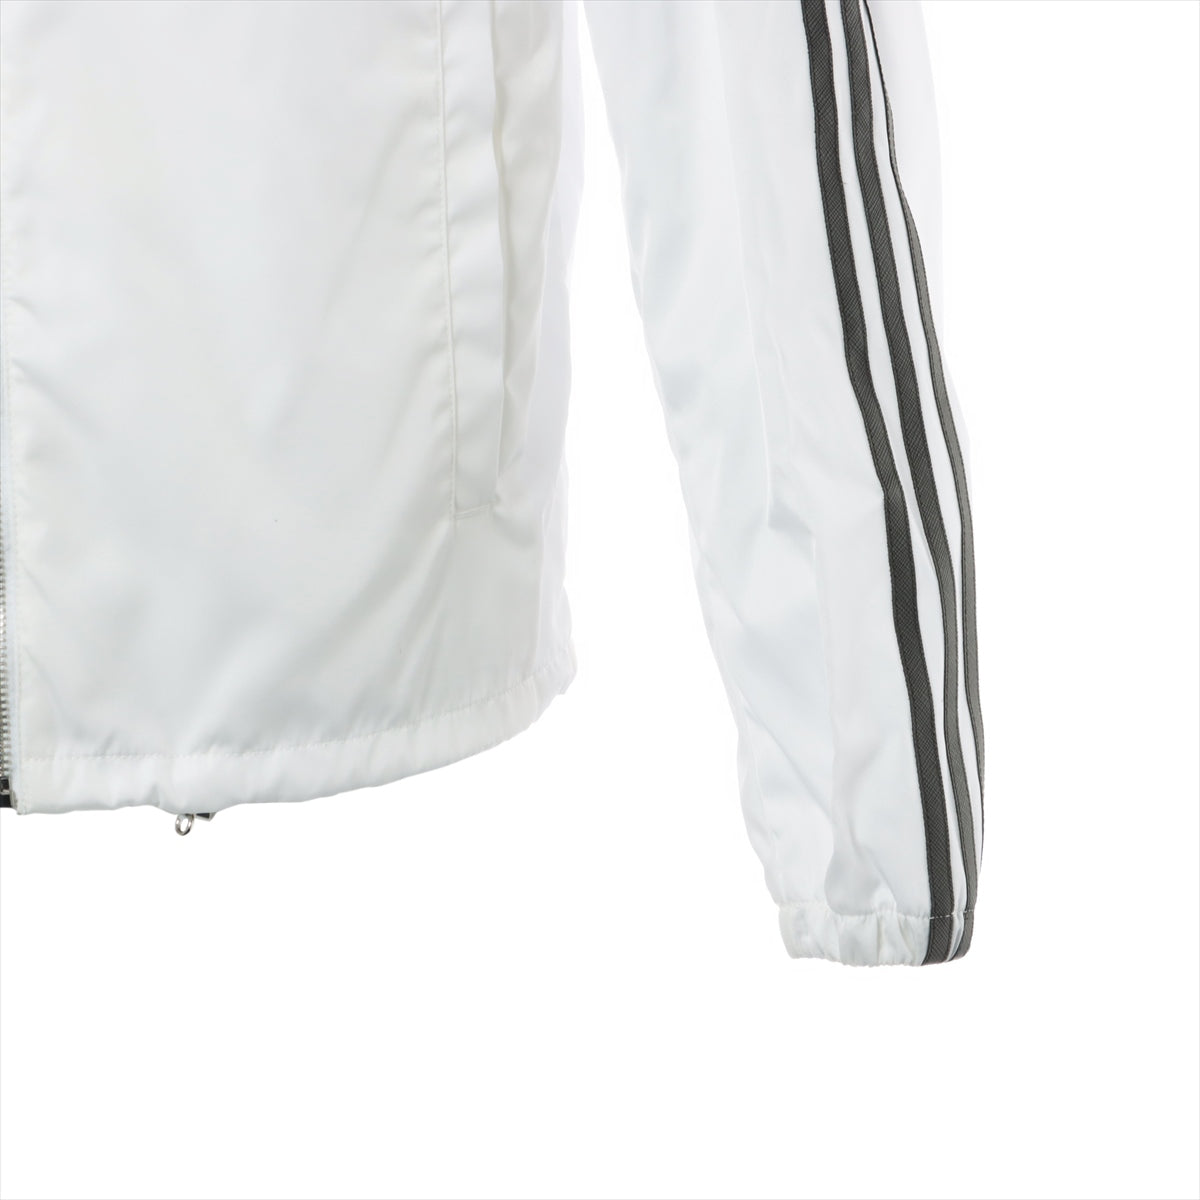 Prada x Adidas Triangle logo 21AW Nylon Jacket 44 Men's White  RE-NYLON track jacket SGB964